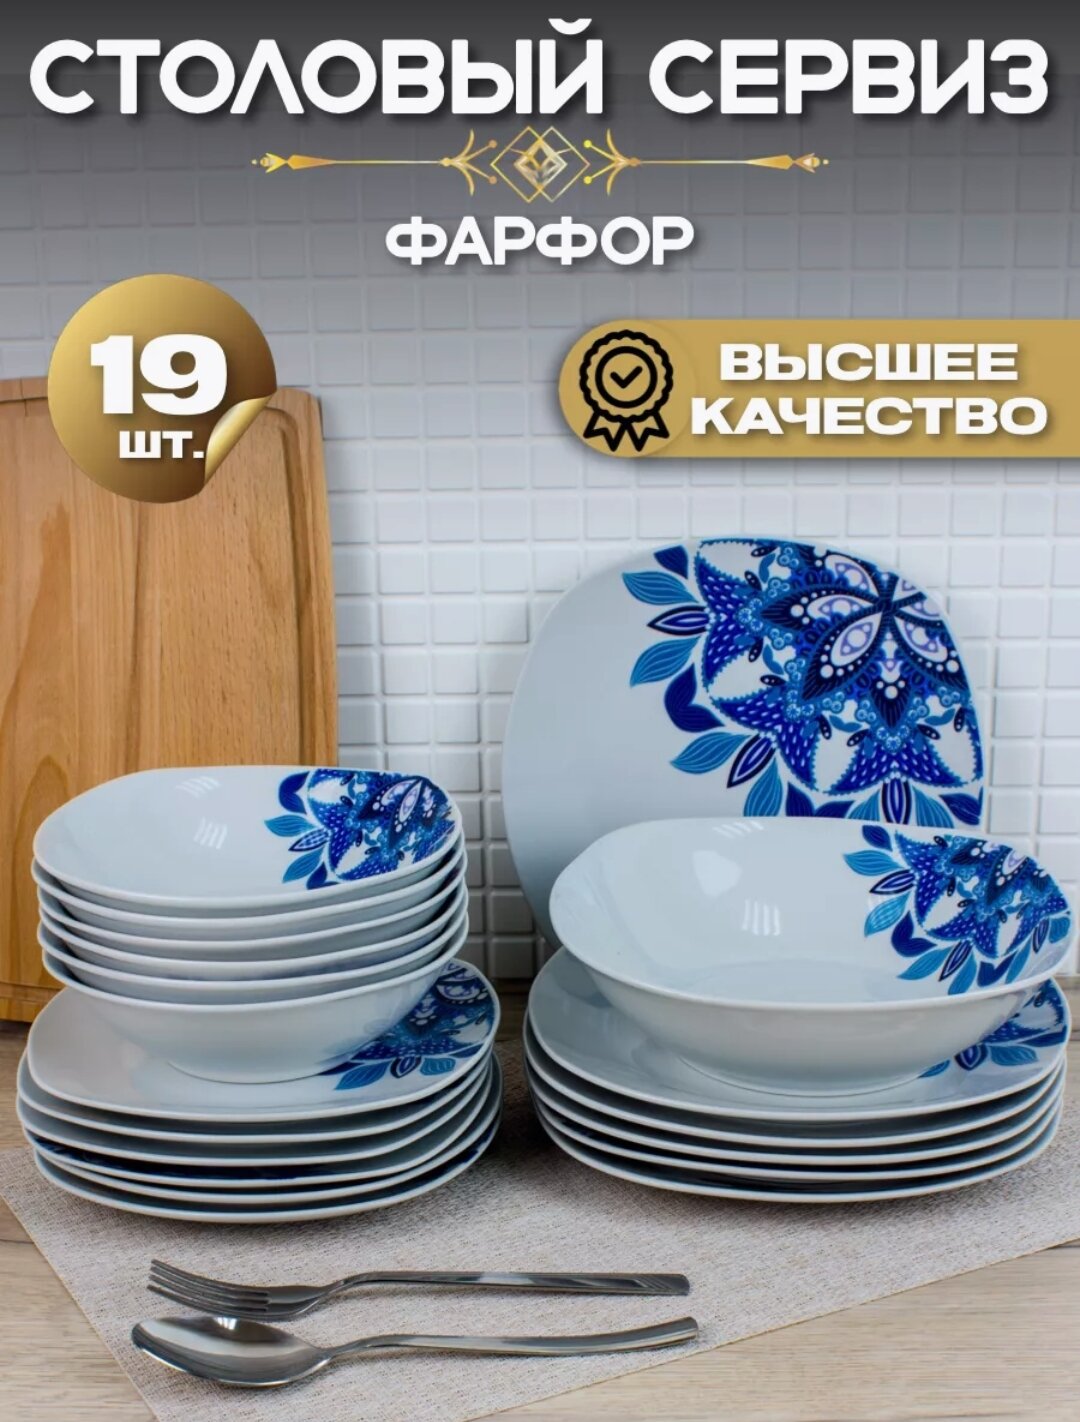 Сервиз Набор столовой посуды 19 предметов квадратные тарелки, фарфор, Зимний узор